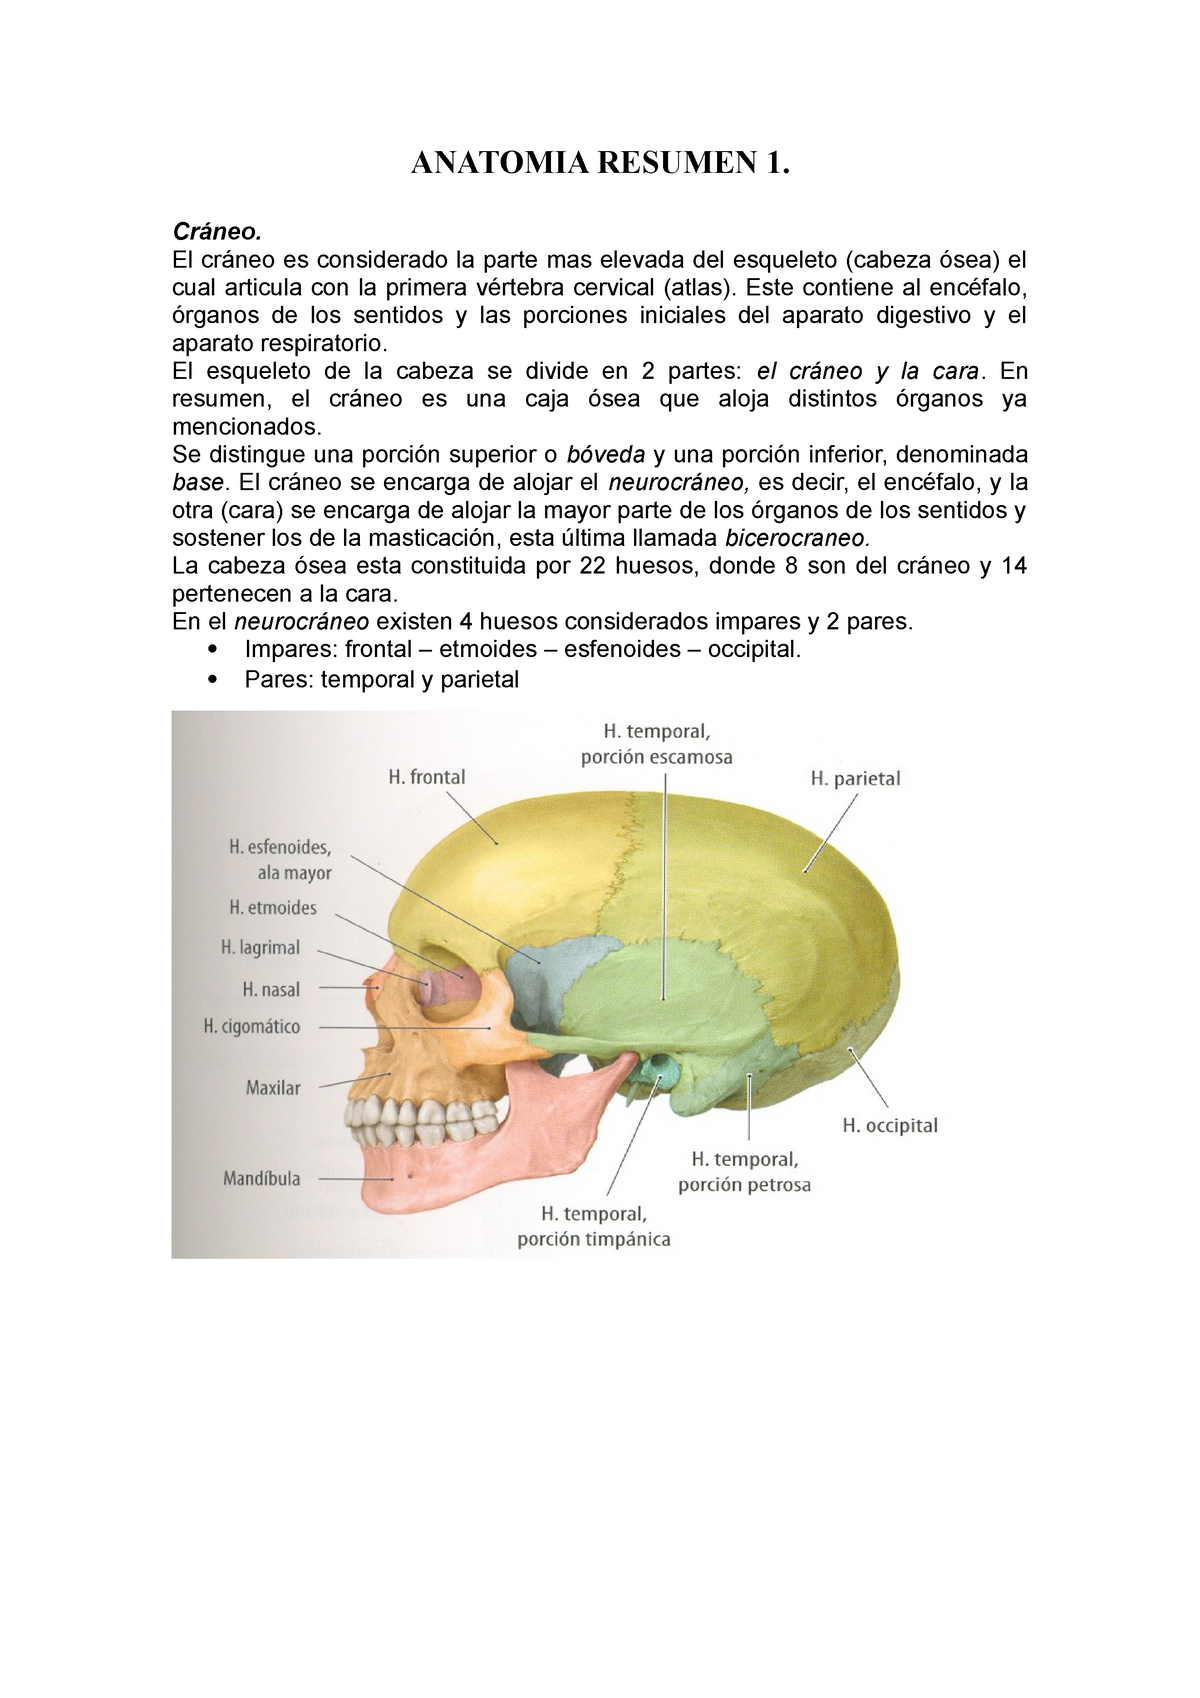 Anatomia Resumen Huesos Del Craneo Anatomia Resumen 1 Cráneo El Cráneo Es Considerado La 0791